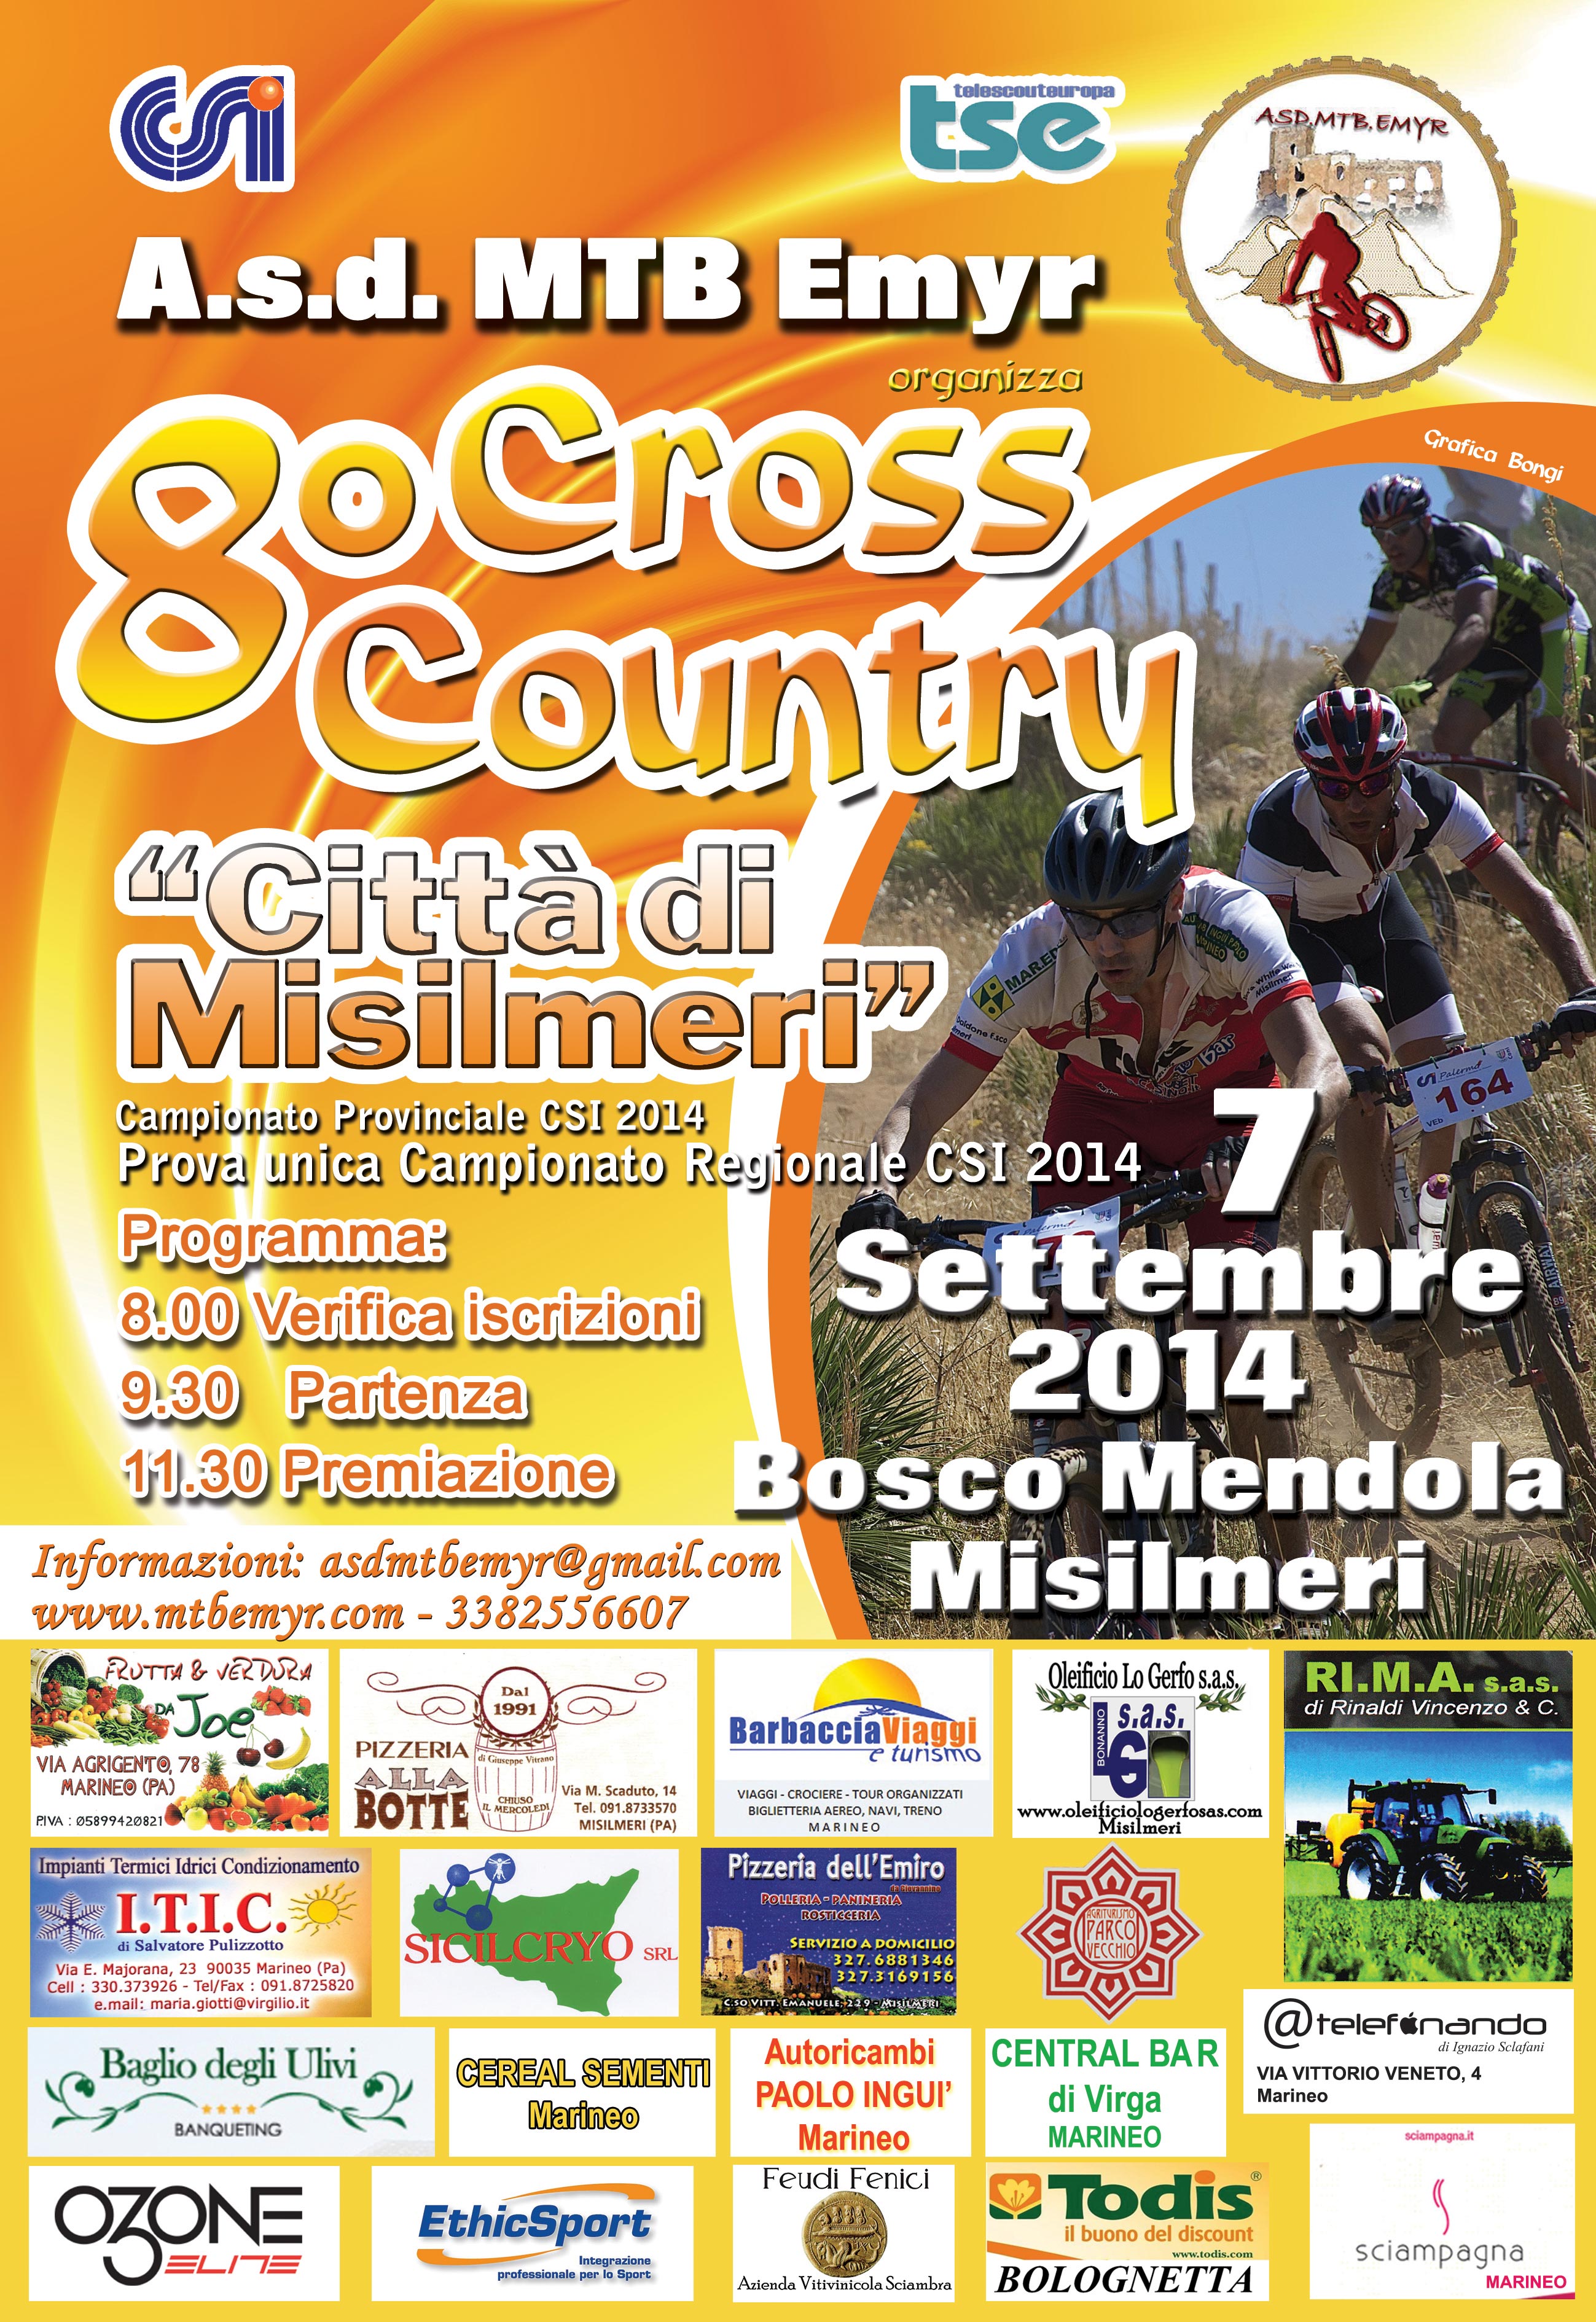 Puntata speciale di Tse sull’8a edizione del Cross Country Città di Misilmeri